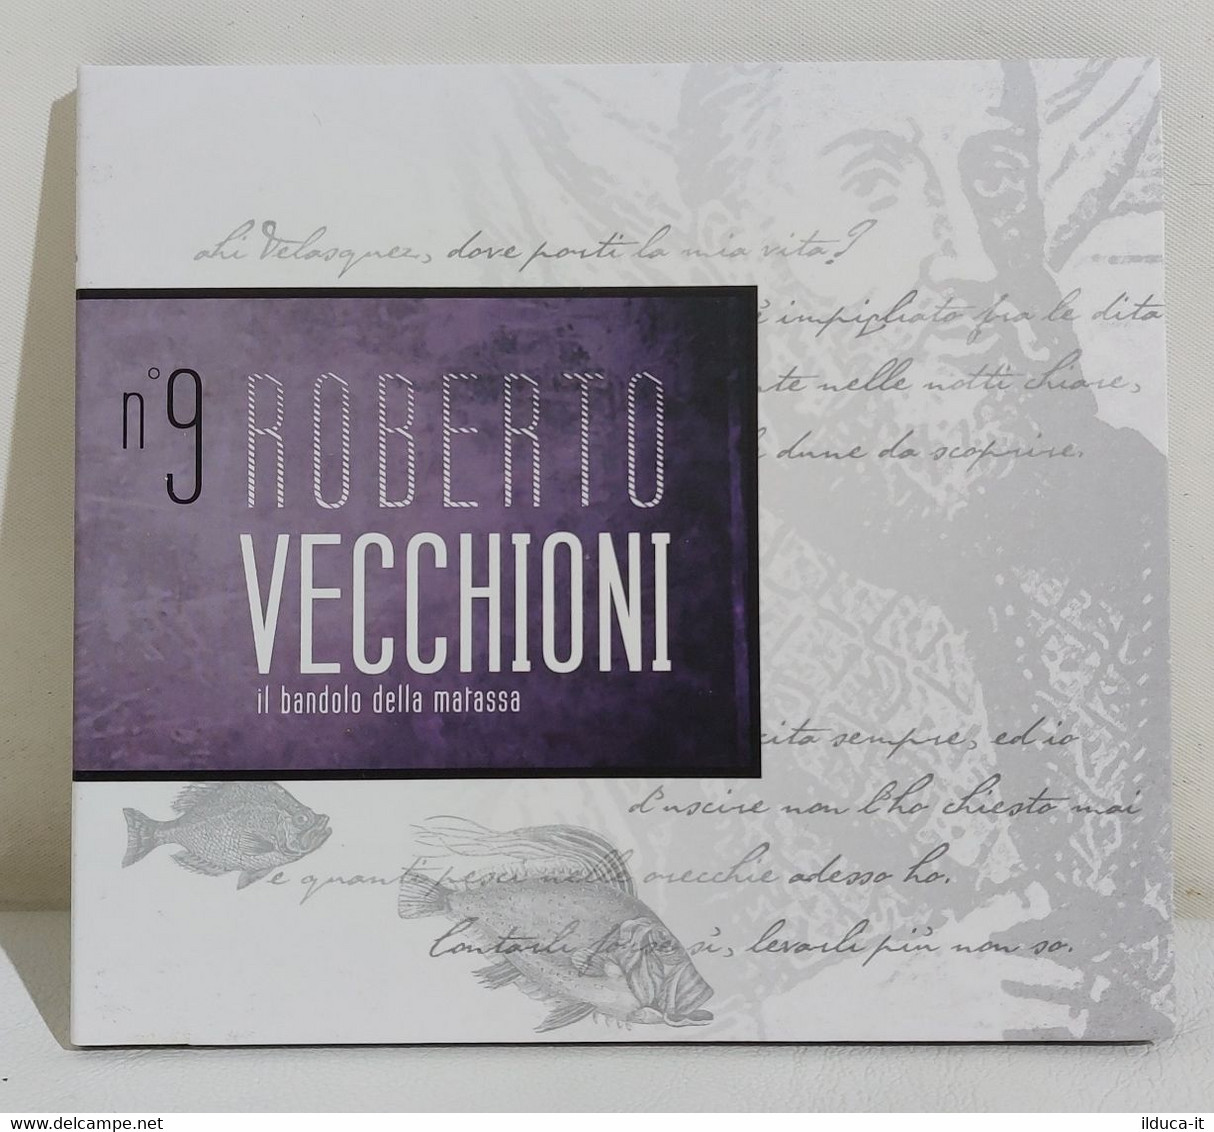 I110834 CD - Scrivi Vecchioni, Scrivi Canzoni N. 9 - Il Bandolo Della Matassa - Sonstige - Italienische Musik